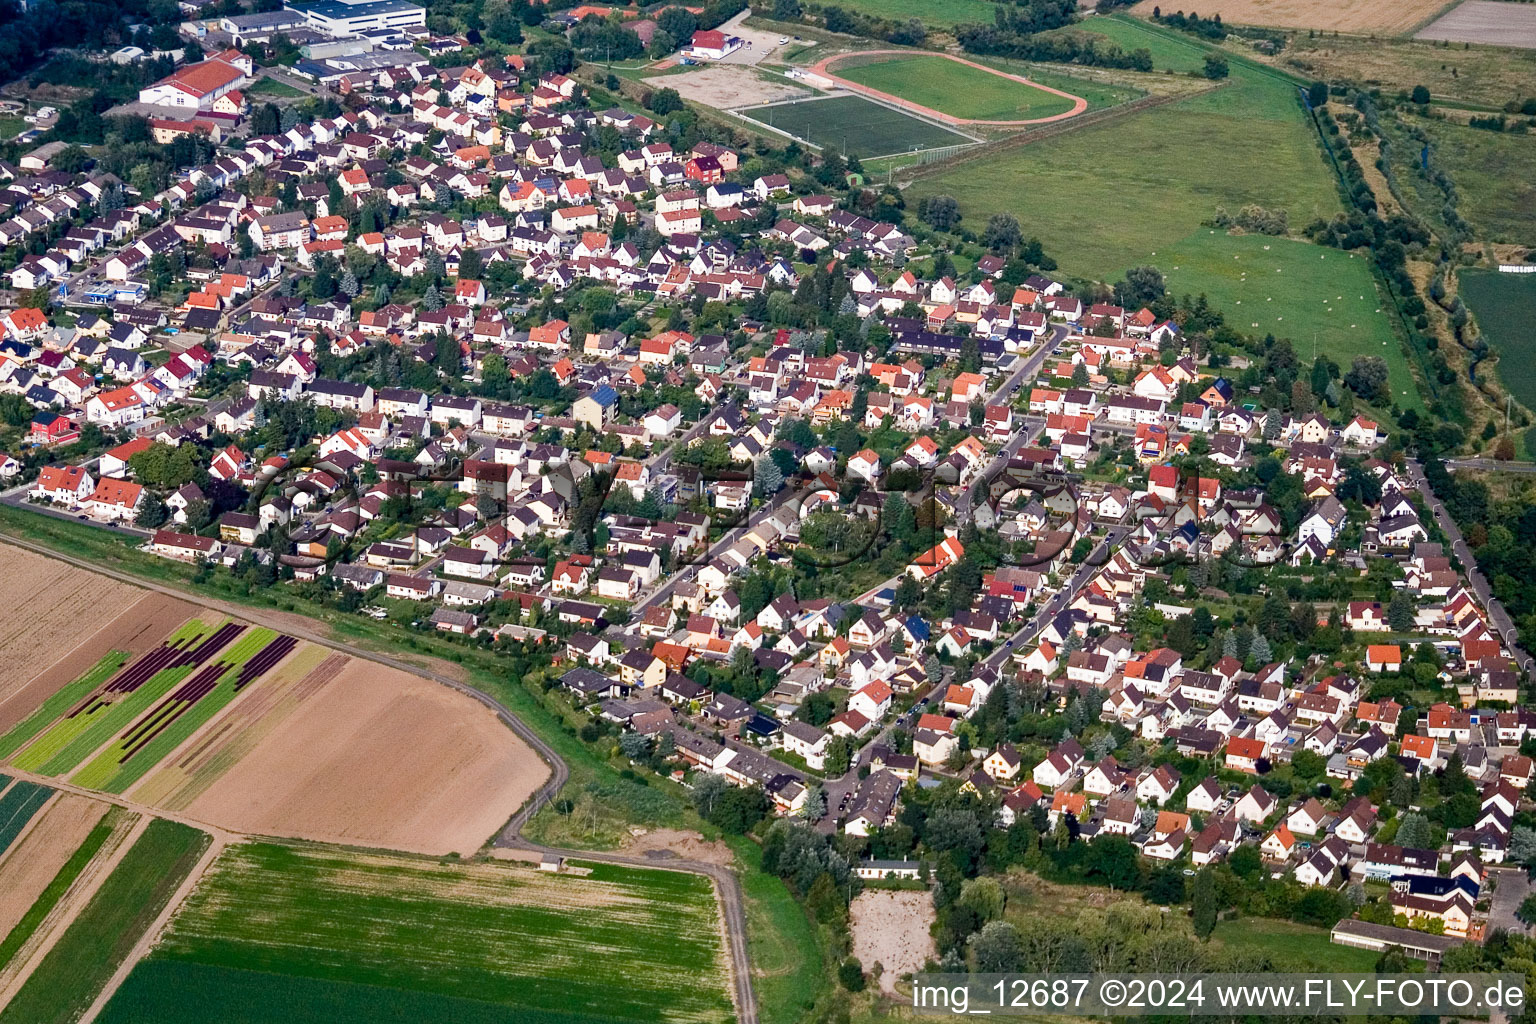 Luftbild von Ortsansicht der Straßen und Häuser der Wohngebiete in Lambsheim im Bundesland Rheinland-Pfalz, Deutschland